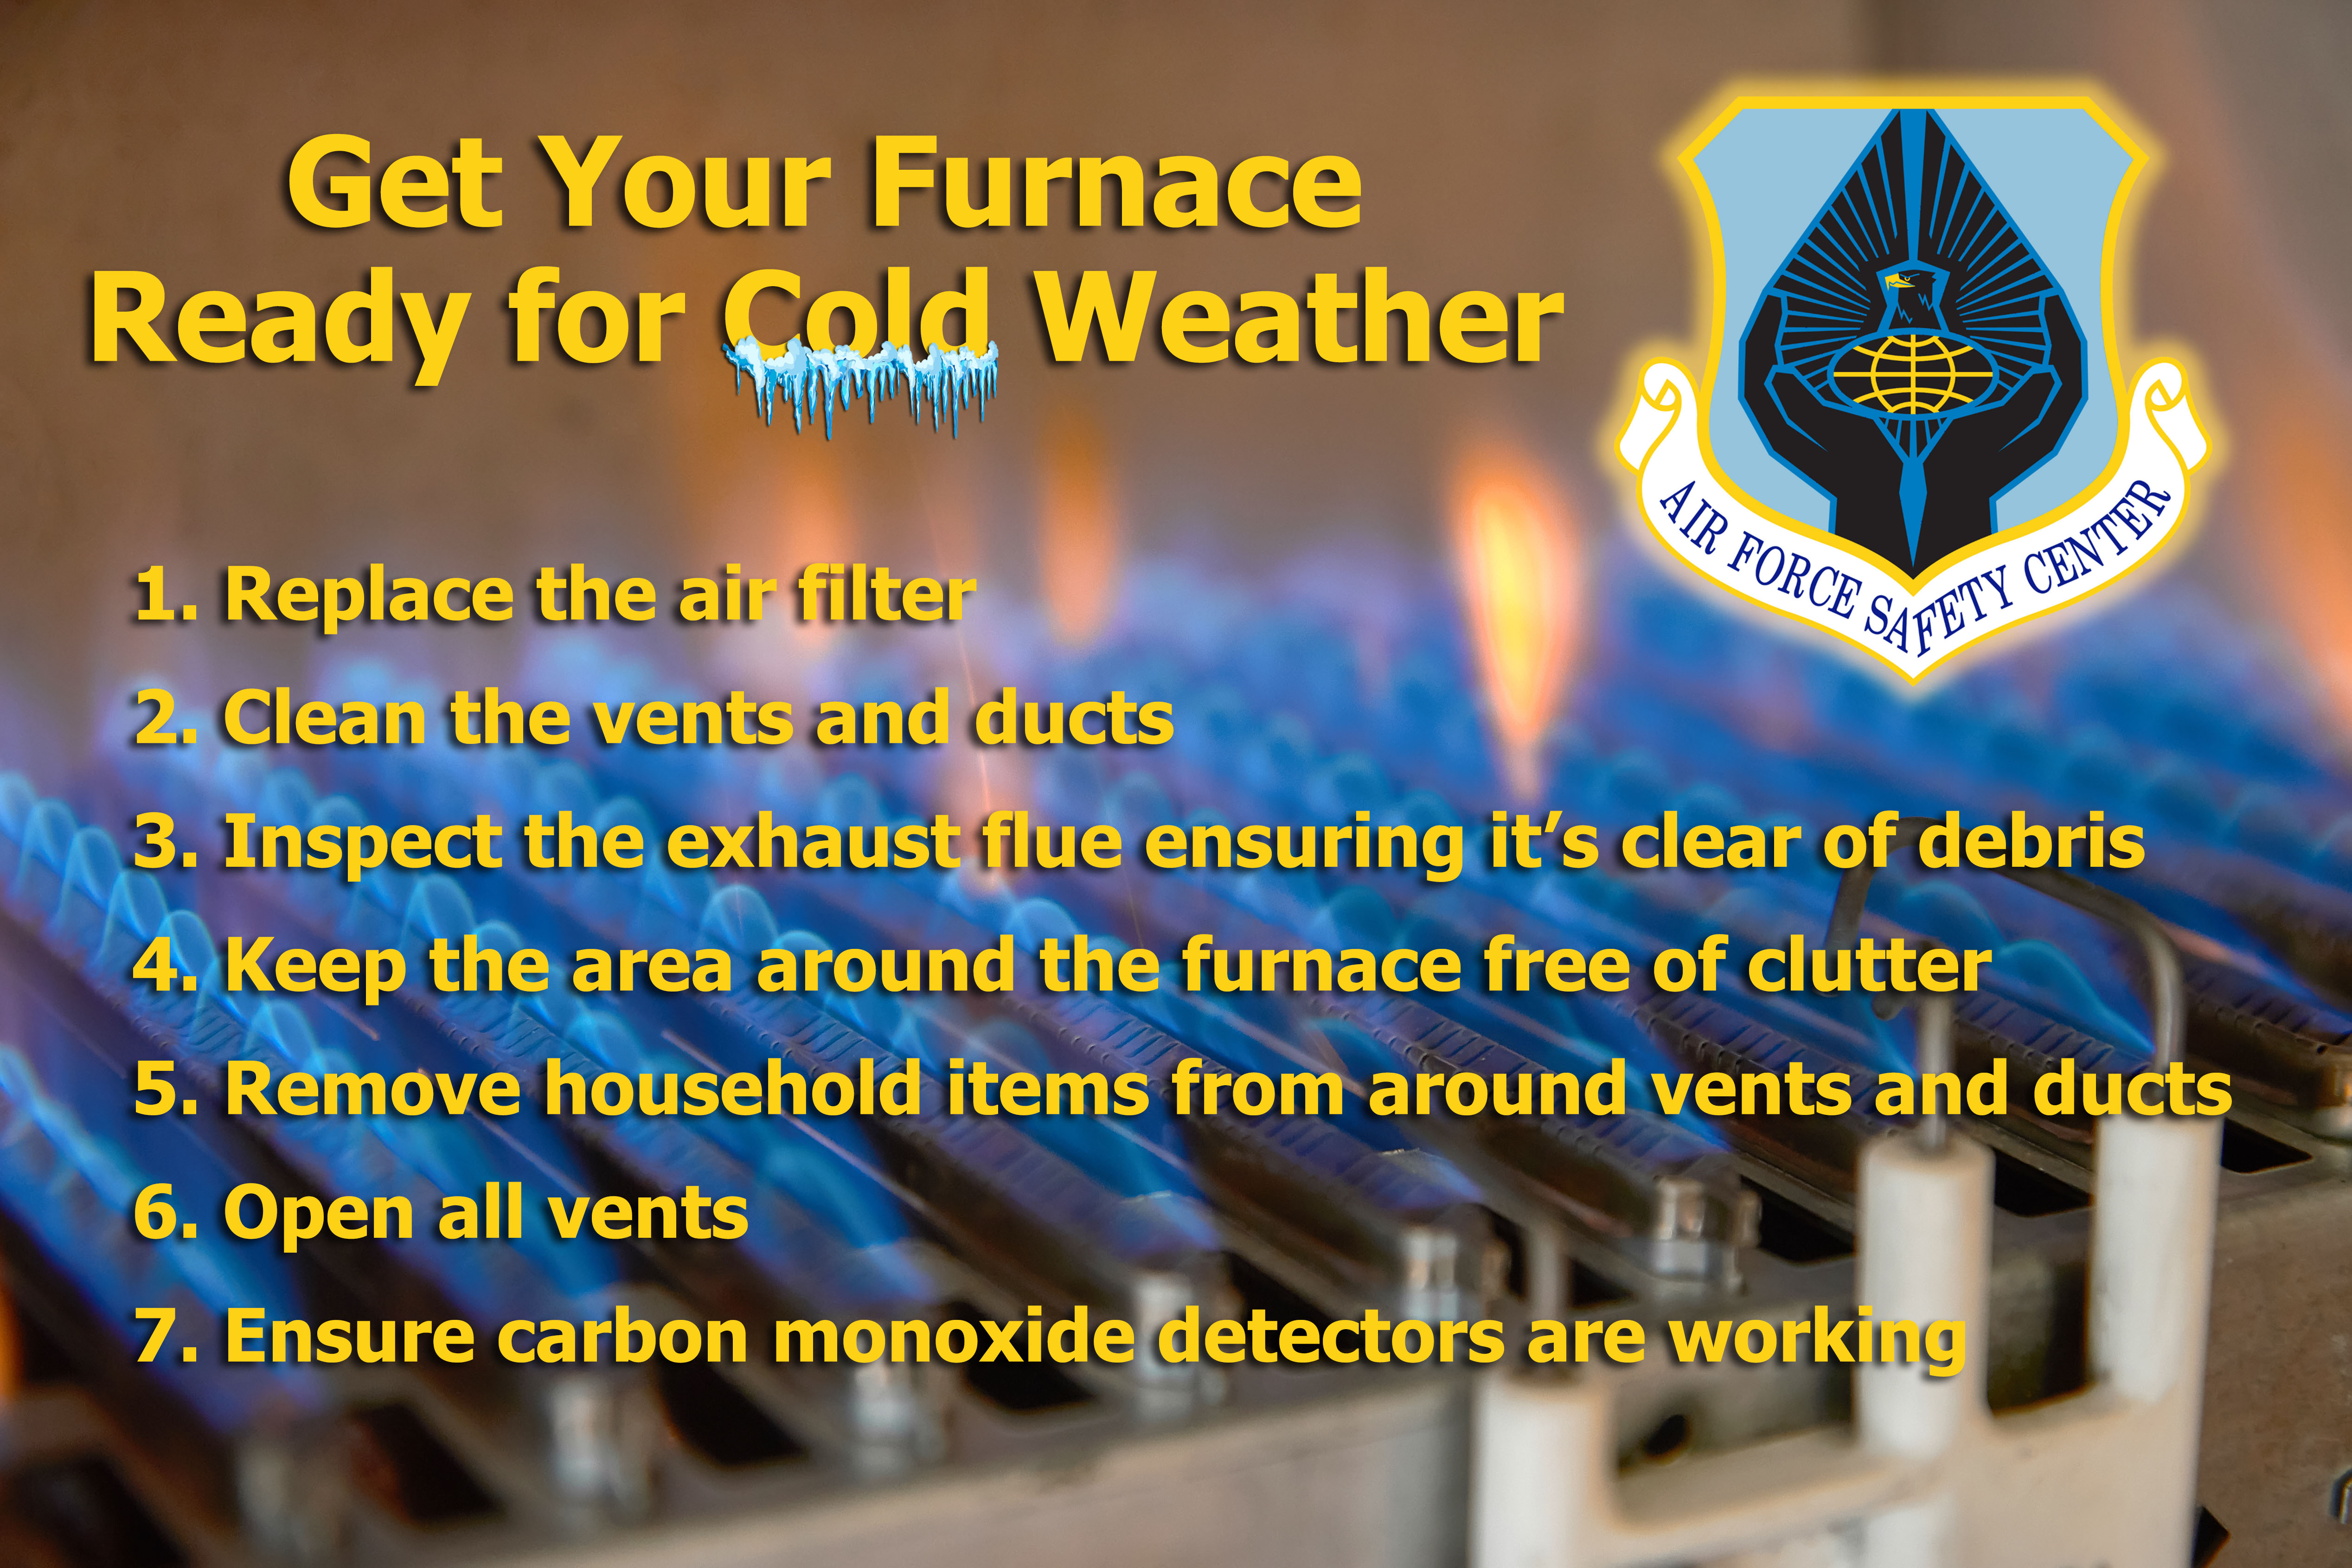 Furnace Safety Tips